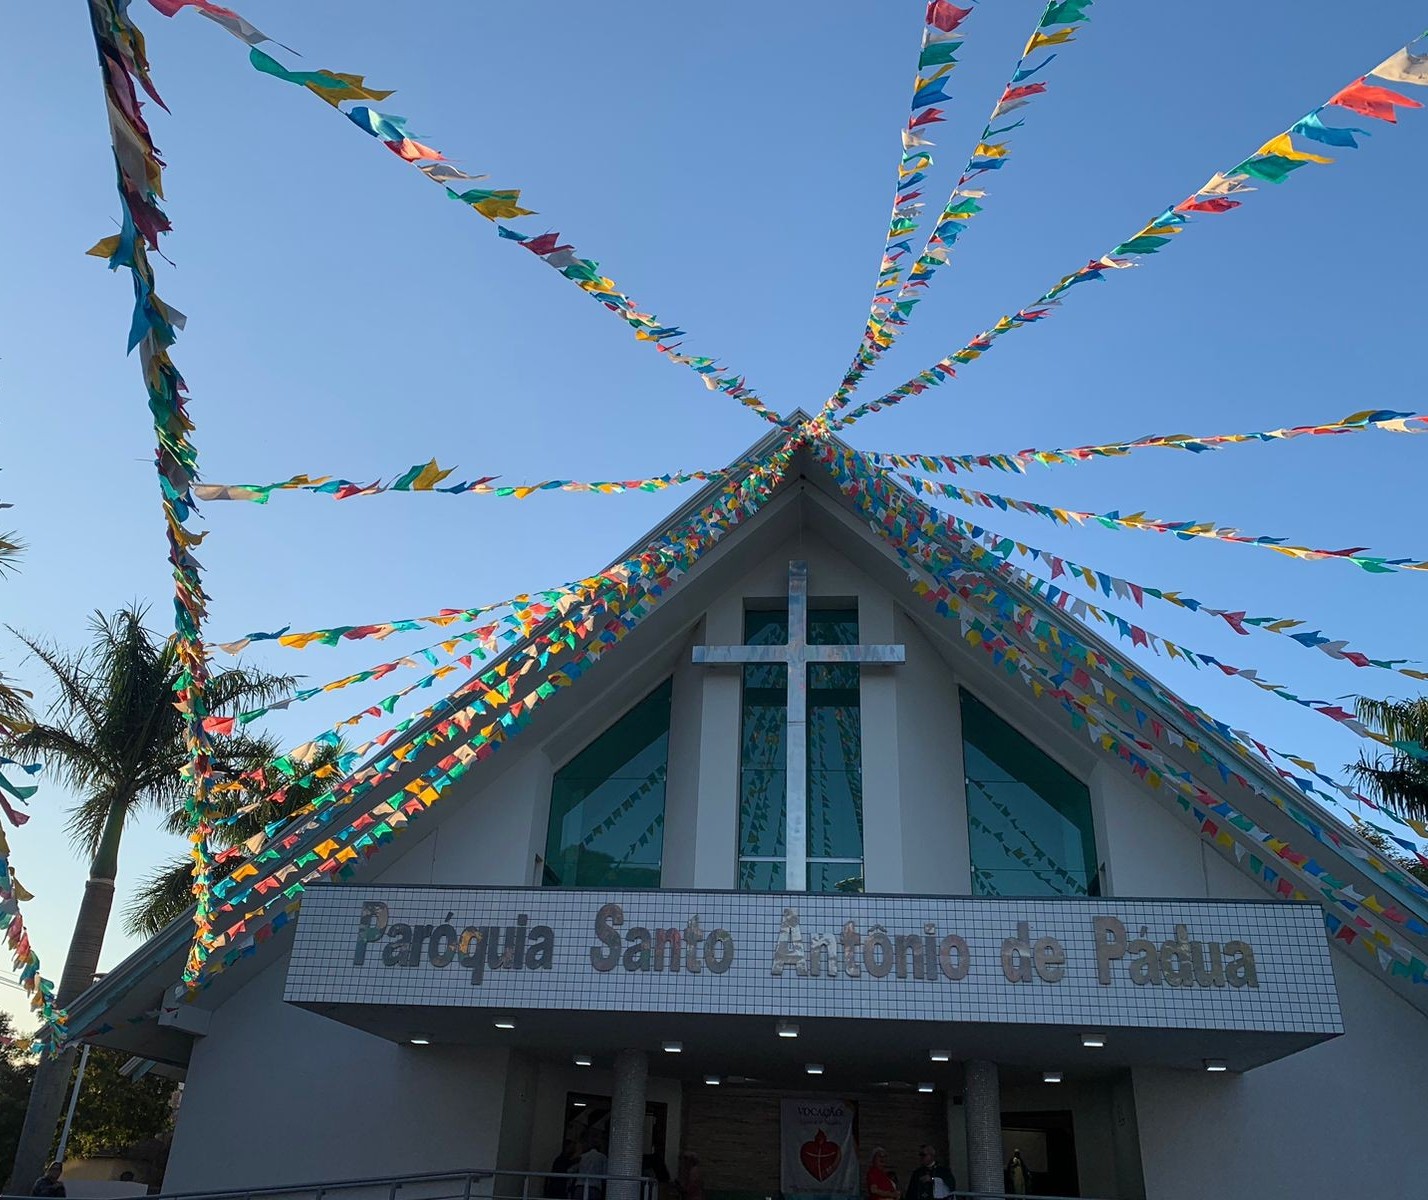 Festa de Santo Antônio reúne milhares de pessoas no fim de semana